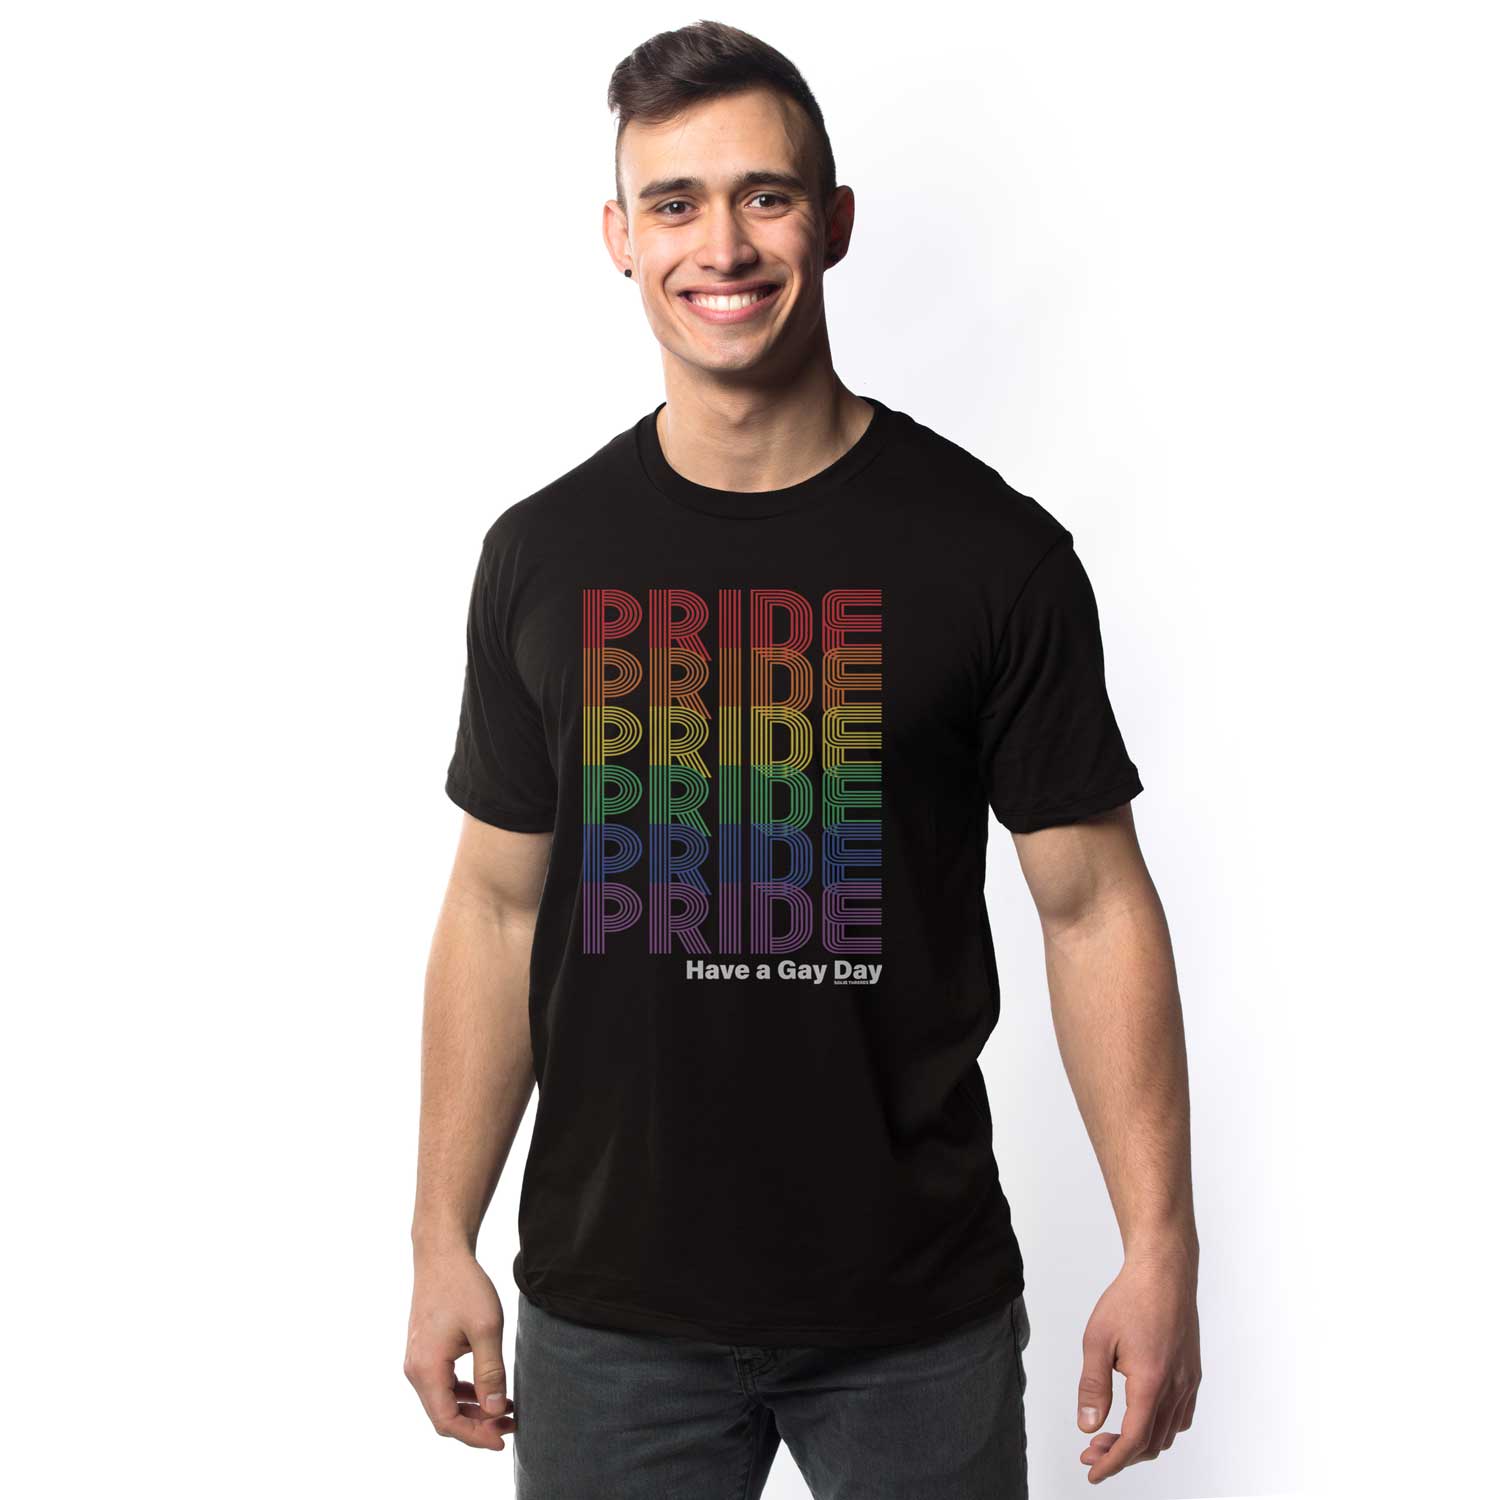 Men's Vintage Pride Rainbow Fade Graphic Tee | Retro Gay Rights T-shirt